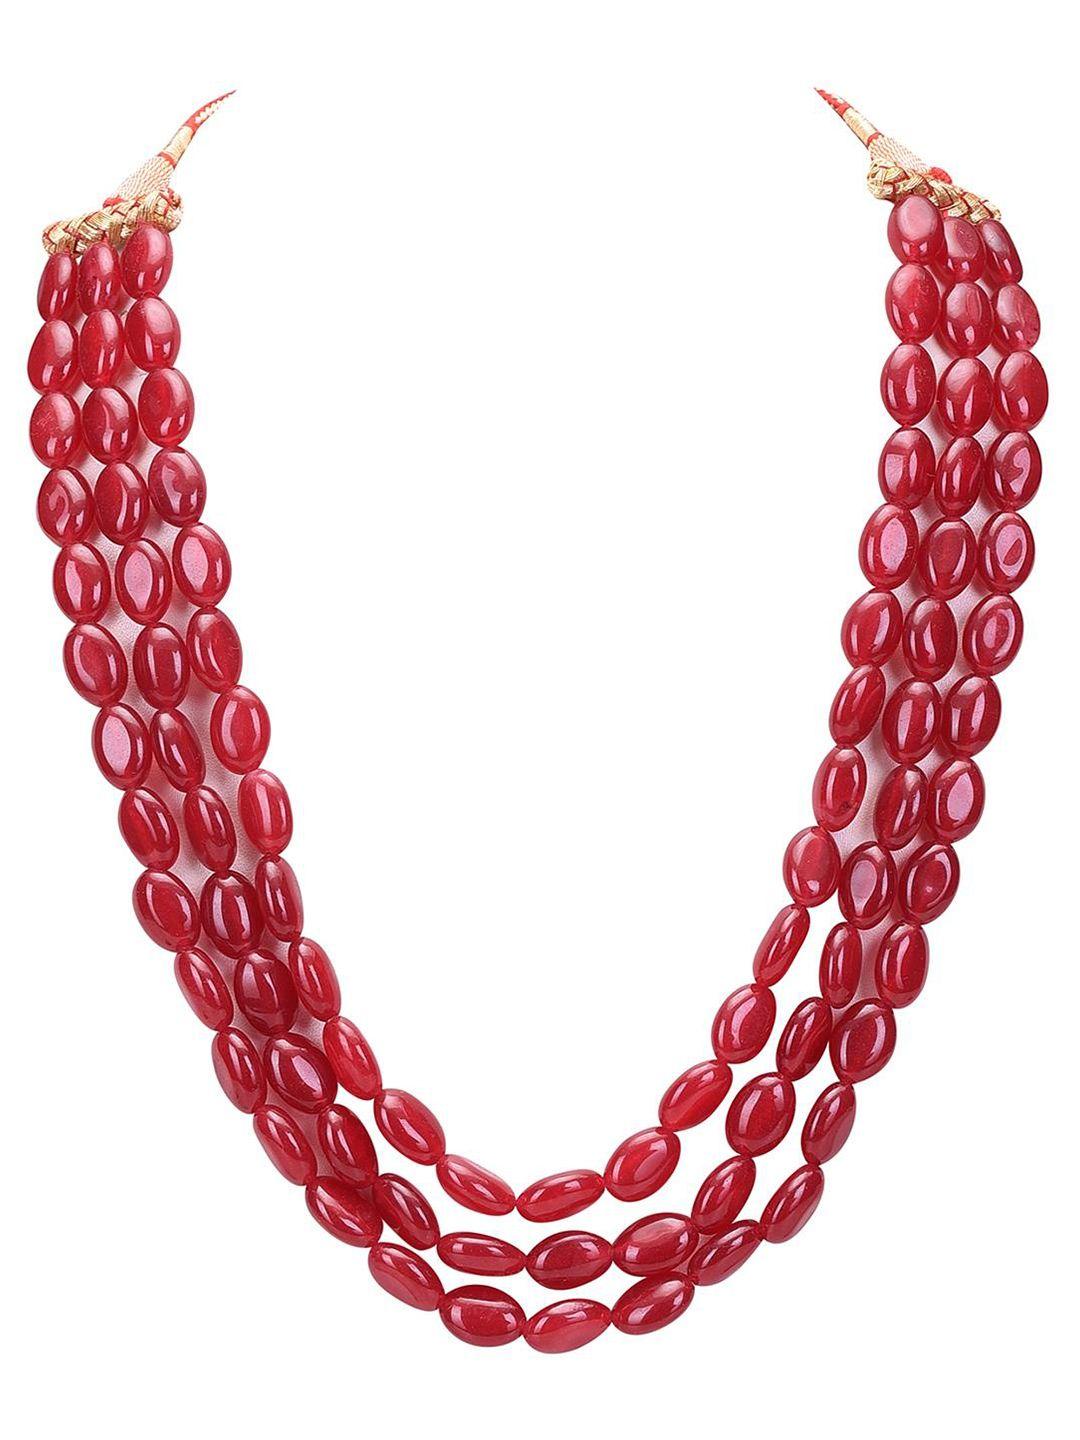 ratnavali jewels quartz layered necklace